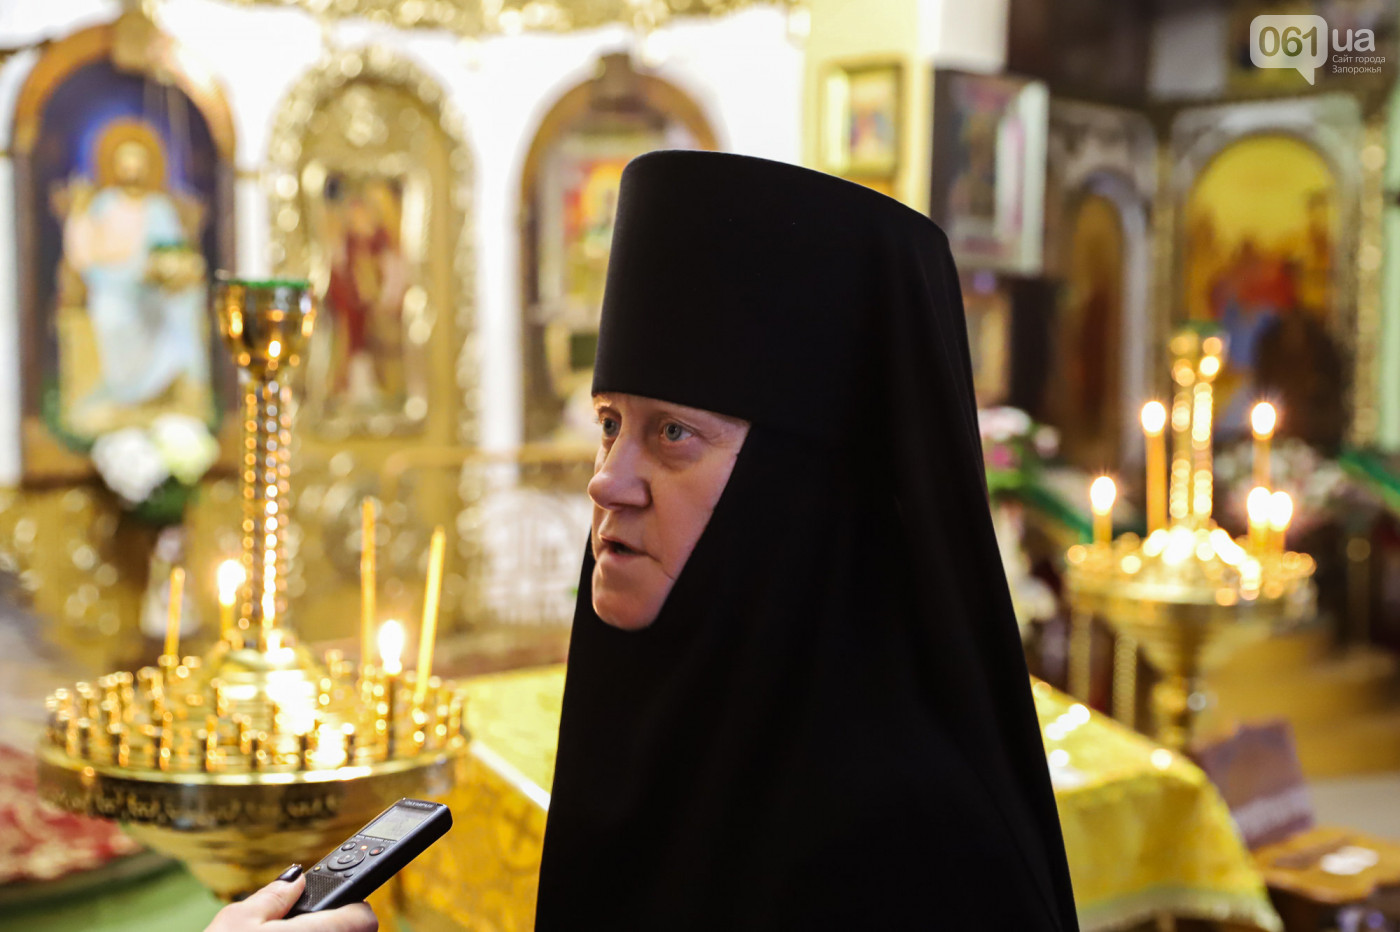 Молитвы, гаджеты и смирение: чем живет единственный женский монастырь Запорожья. ФОТО